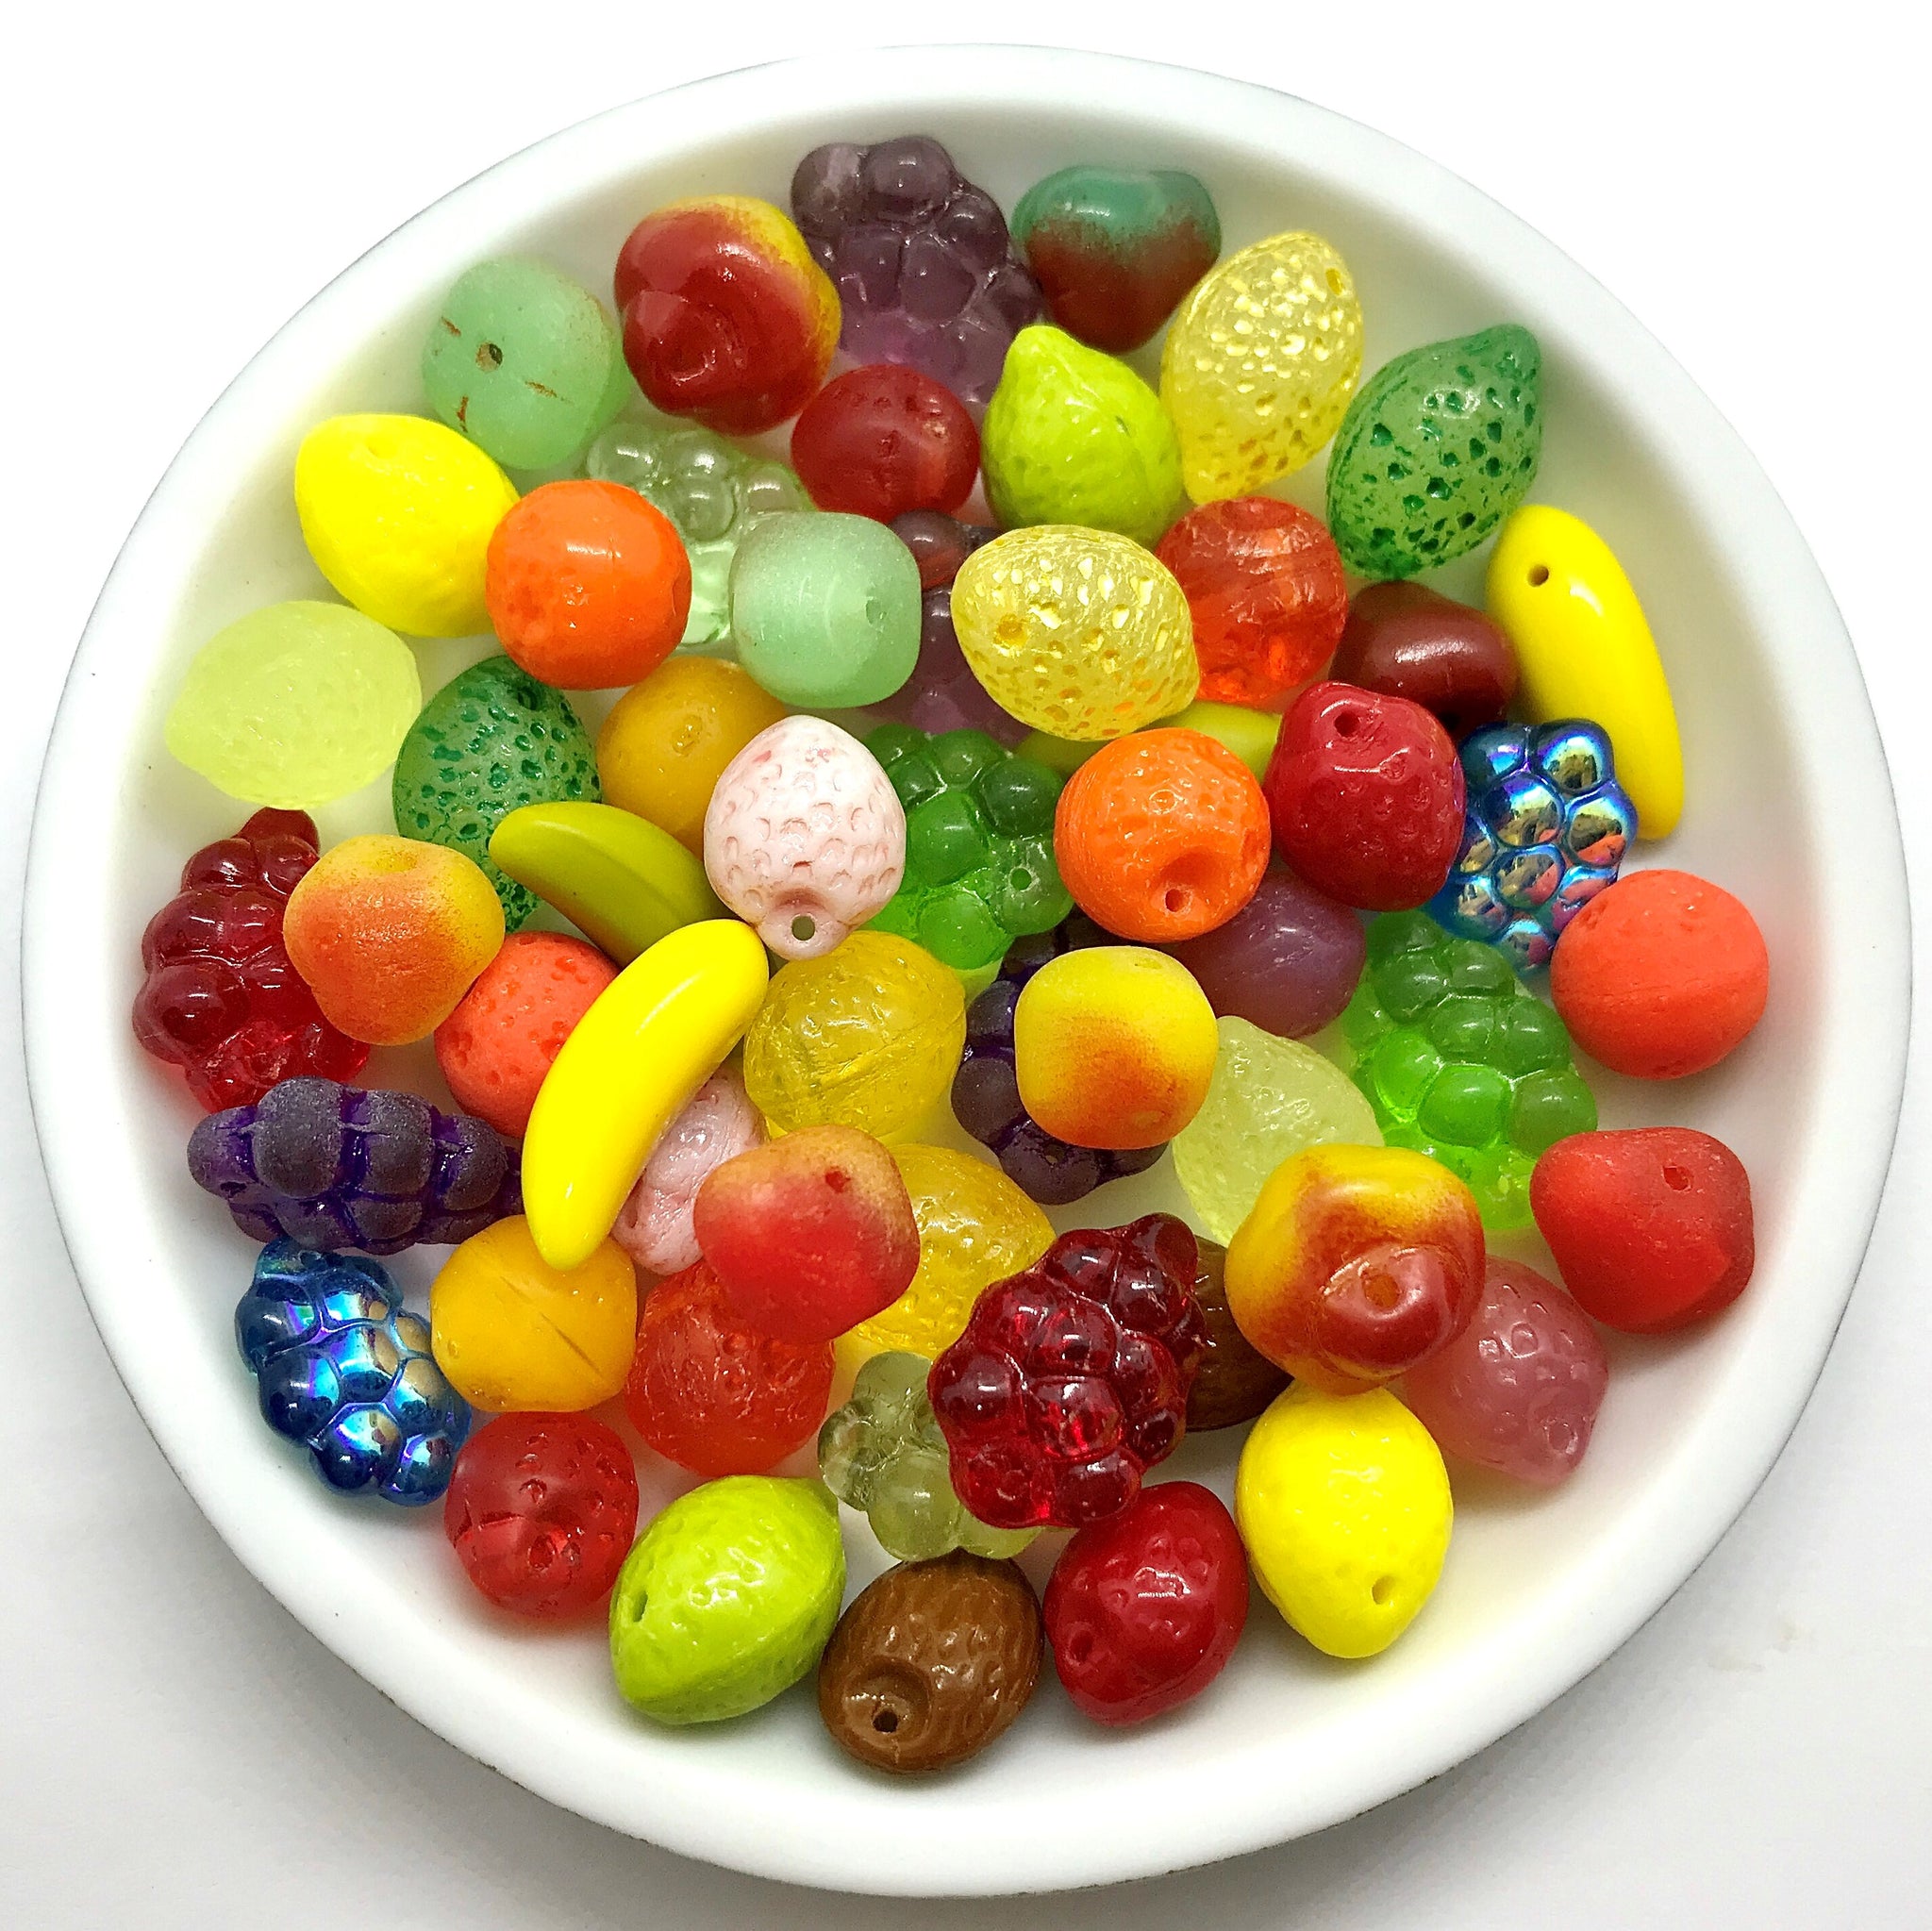 https://orangegrovebeads.com/cdn/shop/products/czech-glass-ultimate-fruit-salad-beads-mix-_3_1_1024x1024@2x.jpg?v=1691611338